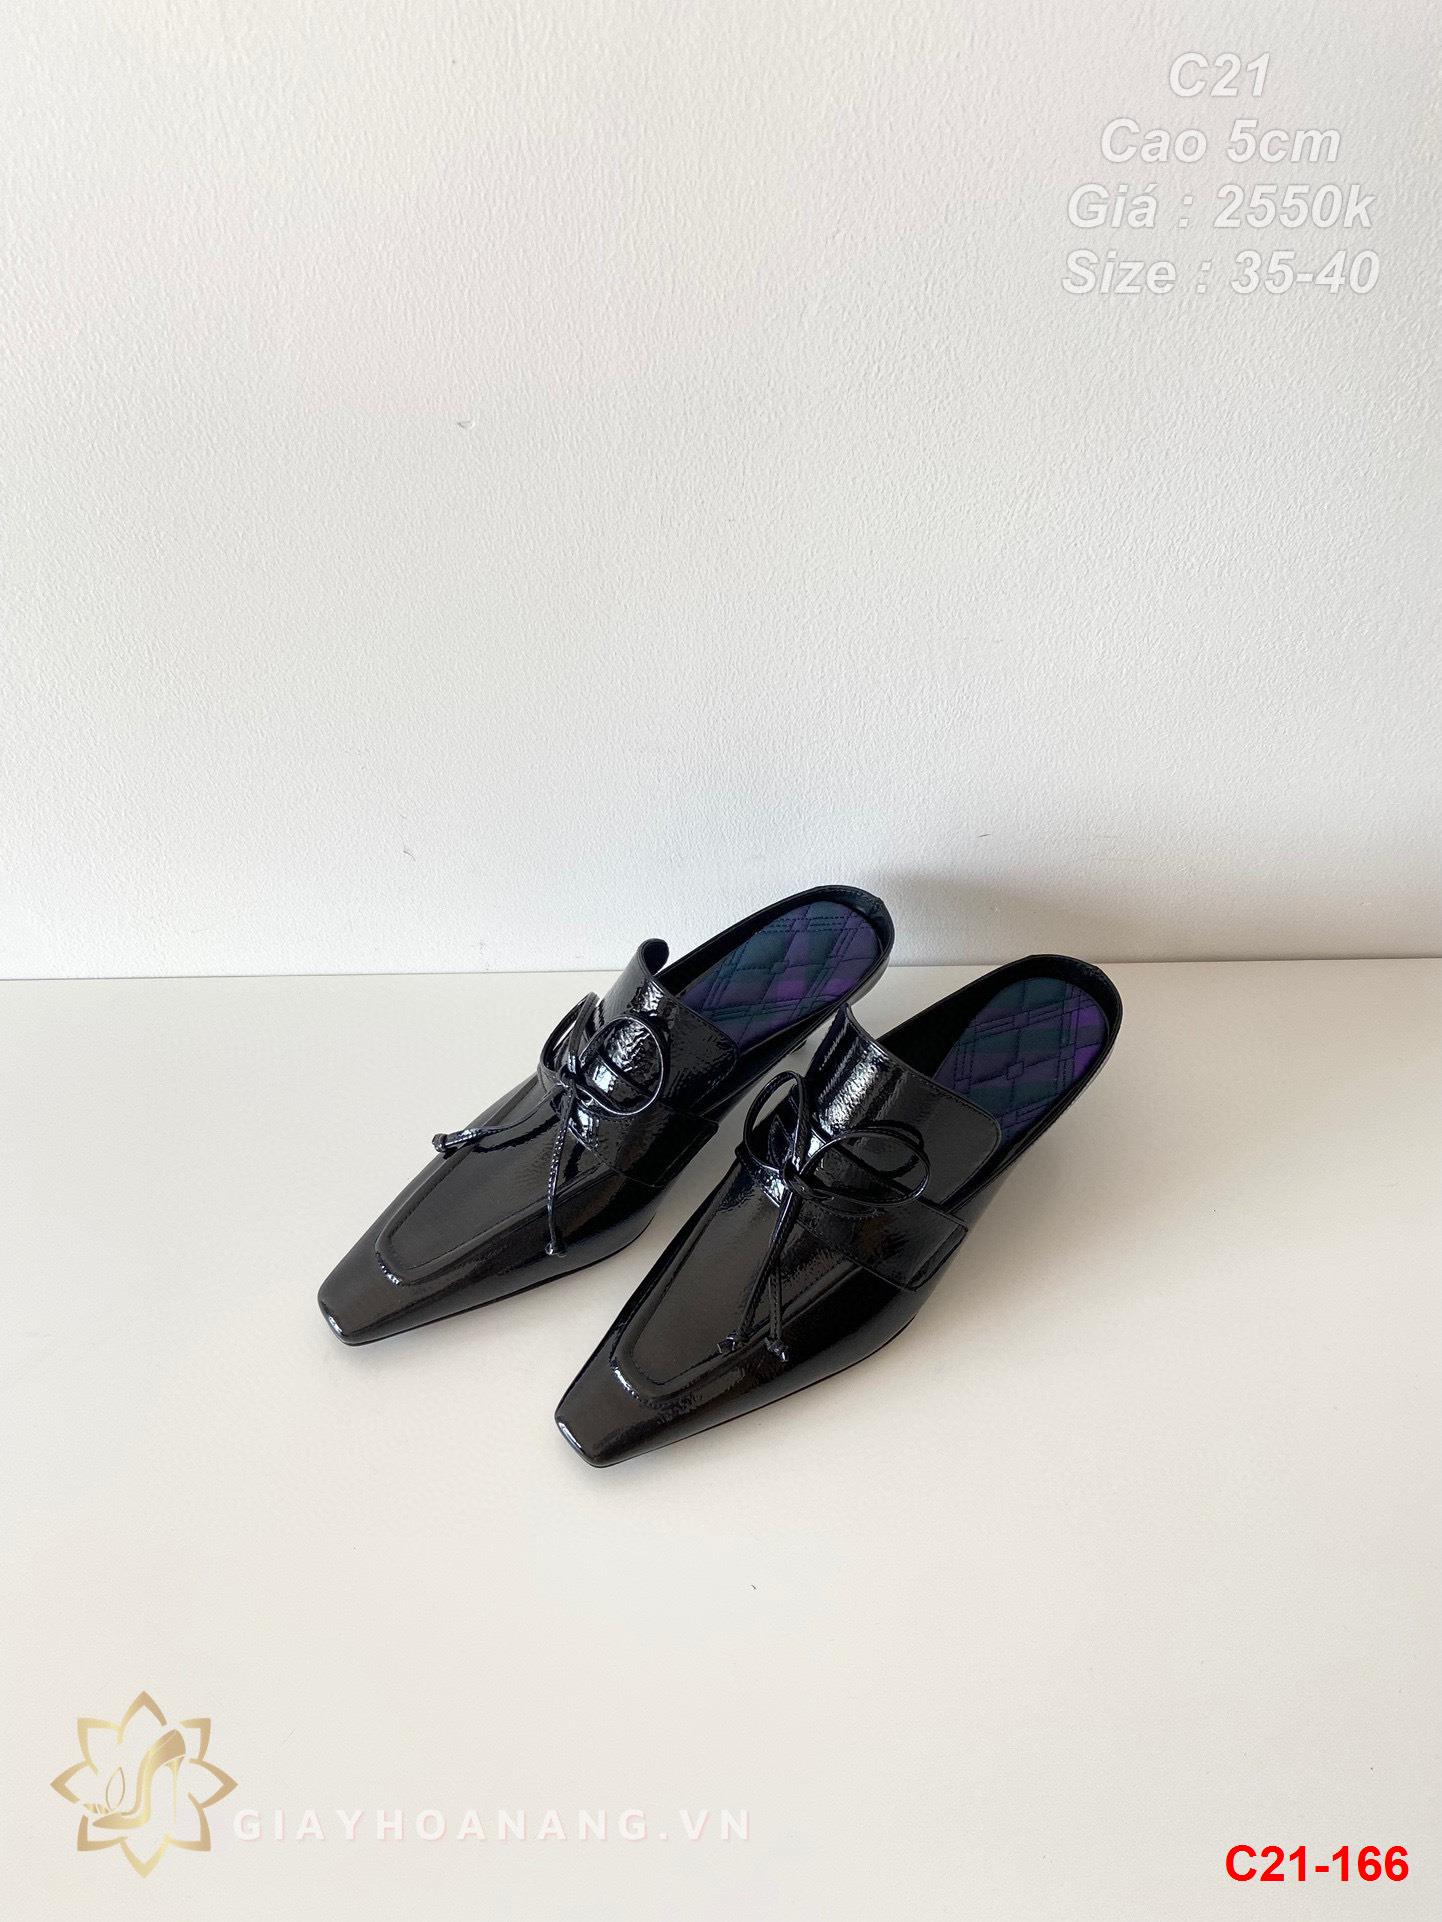 C21-166 Burberry giày cao 5cm siêu cấp